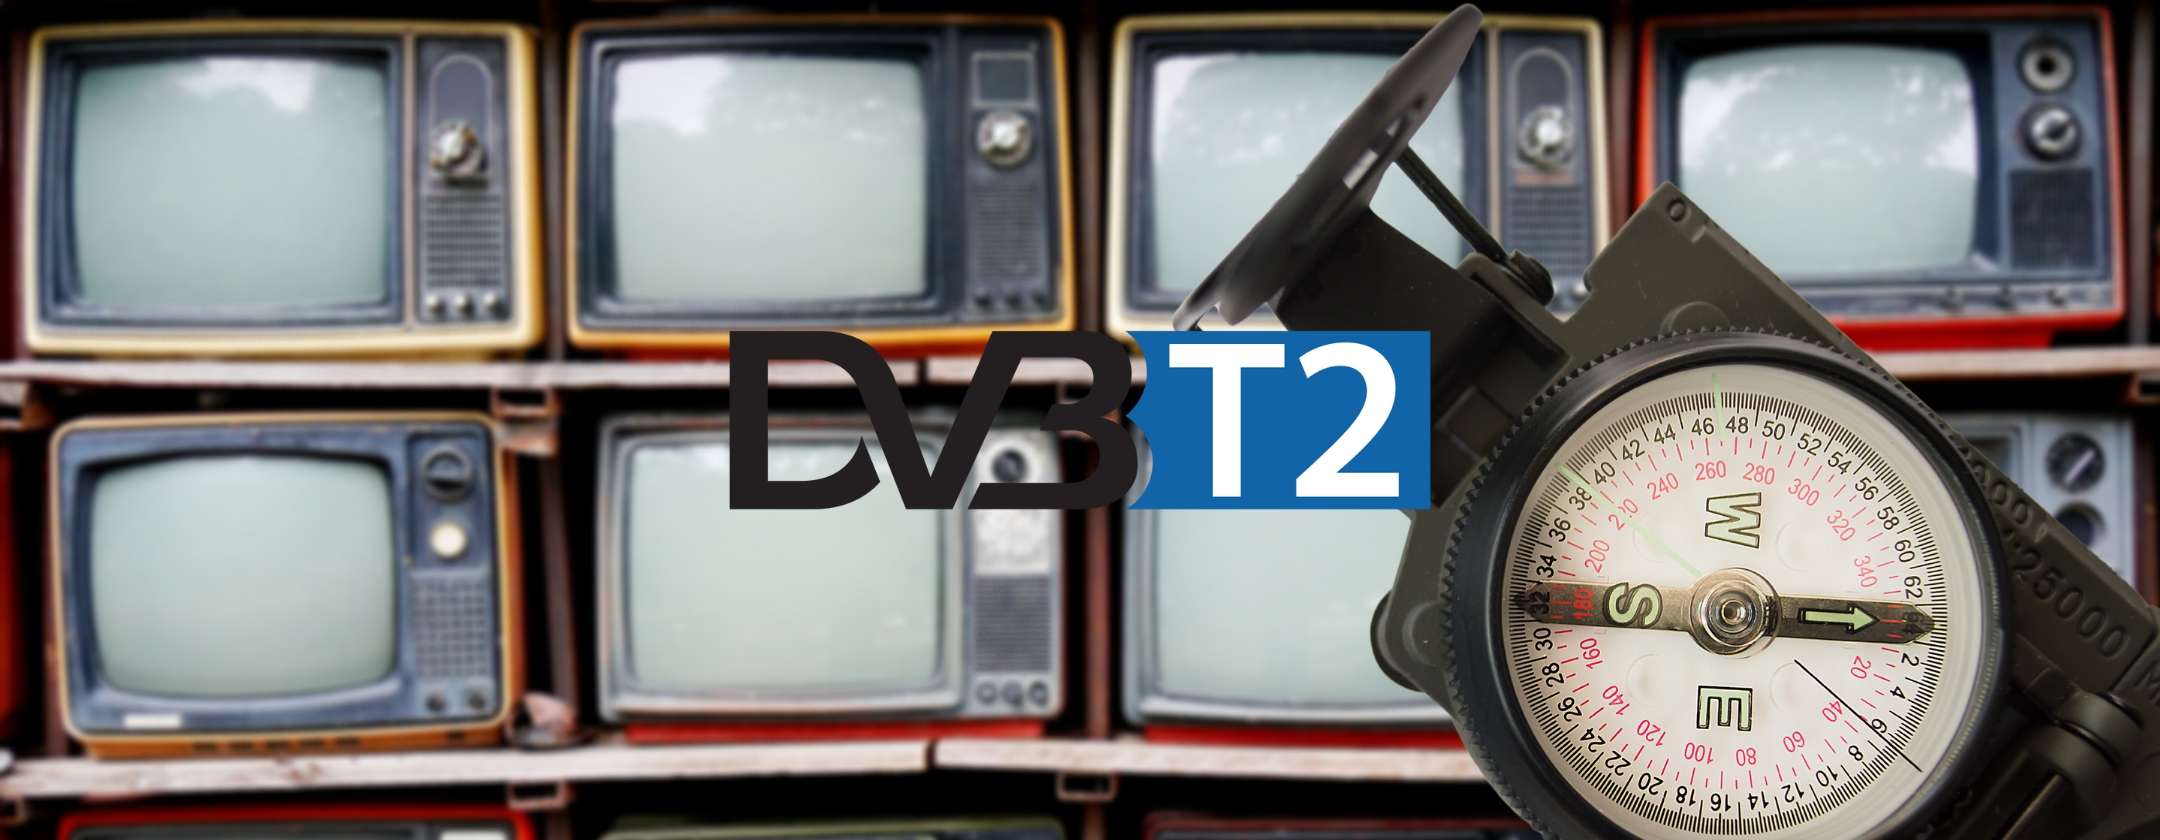 Digitale terrestre DVB-T2: a che punto siamo veramente?